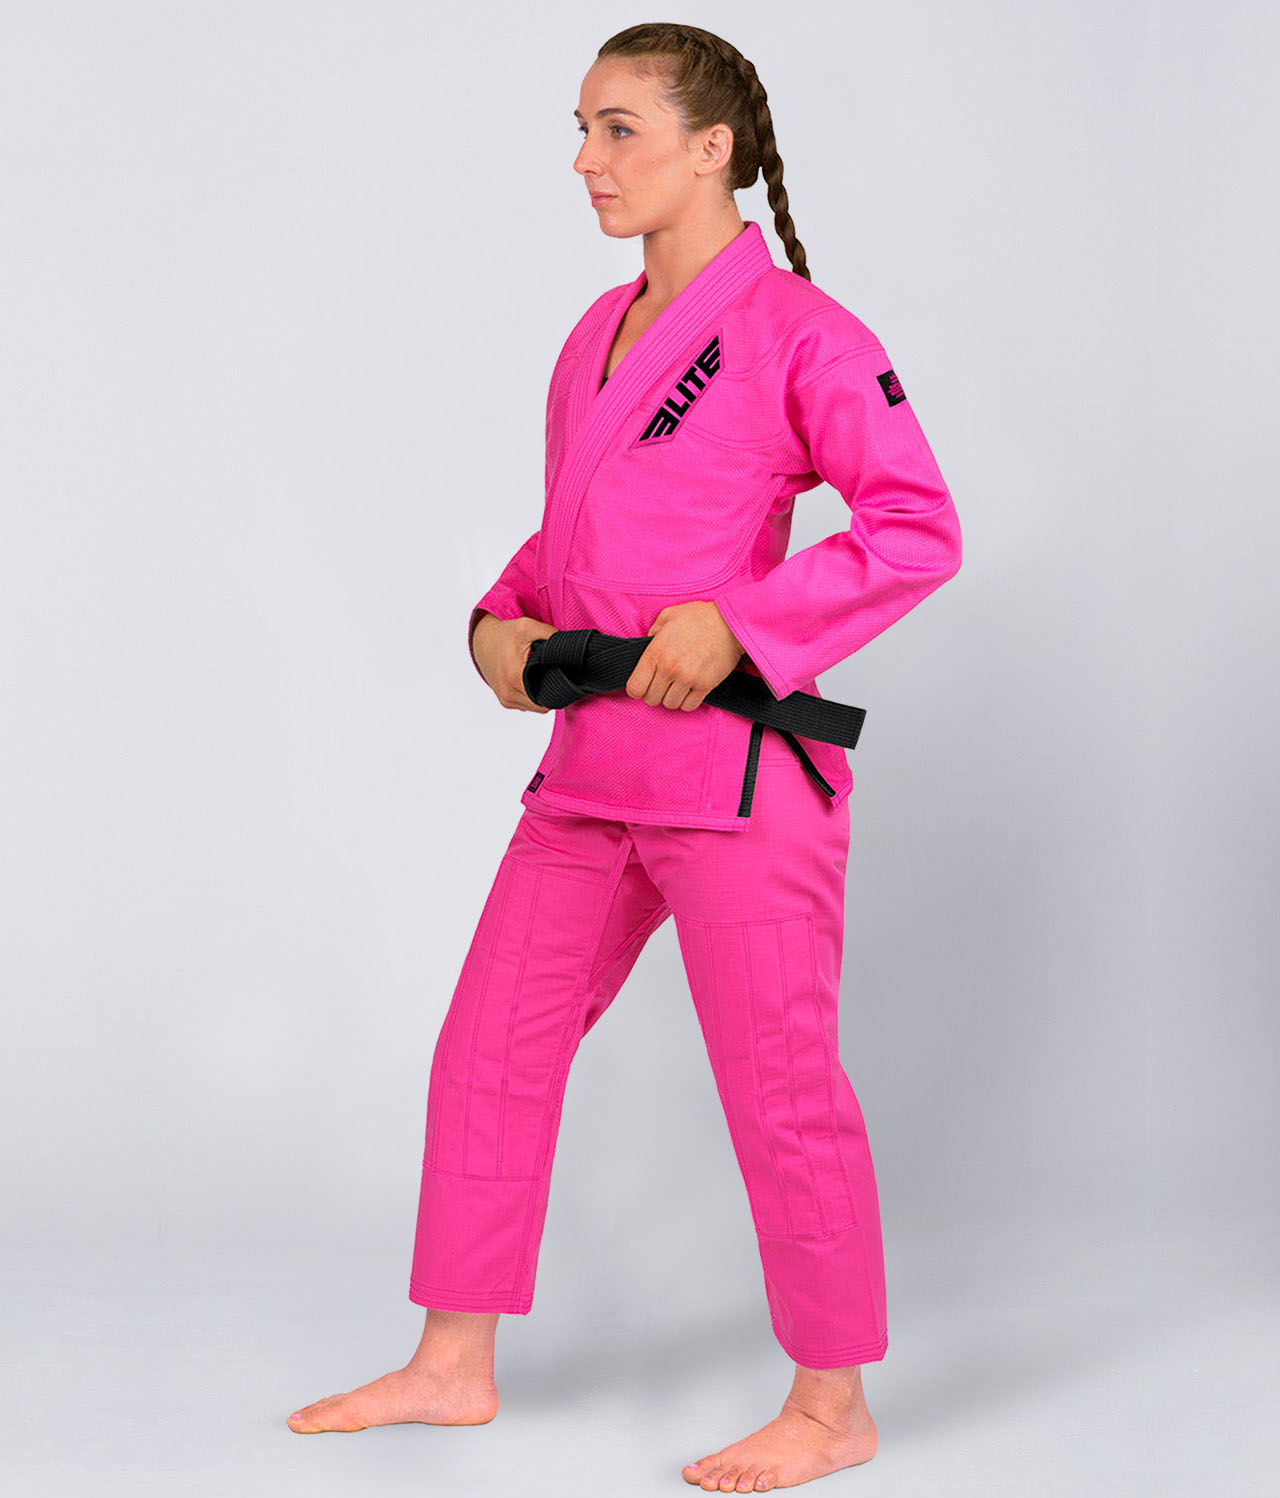 Elite Sports Women's Core Pink Brazilian Jiu Jitsu BJJ Gi Side View